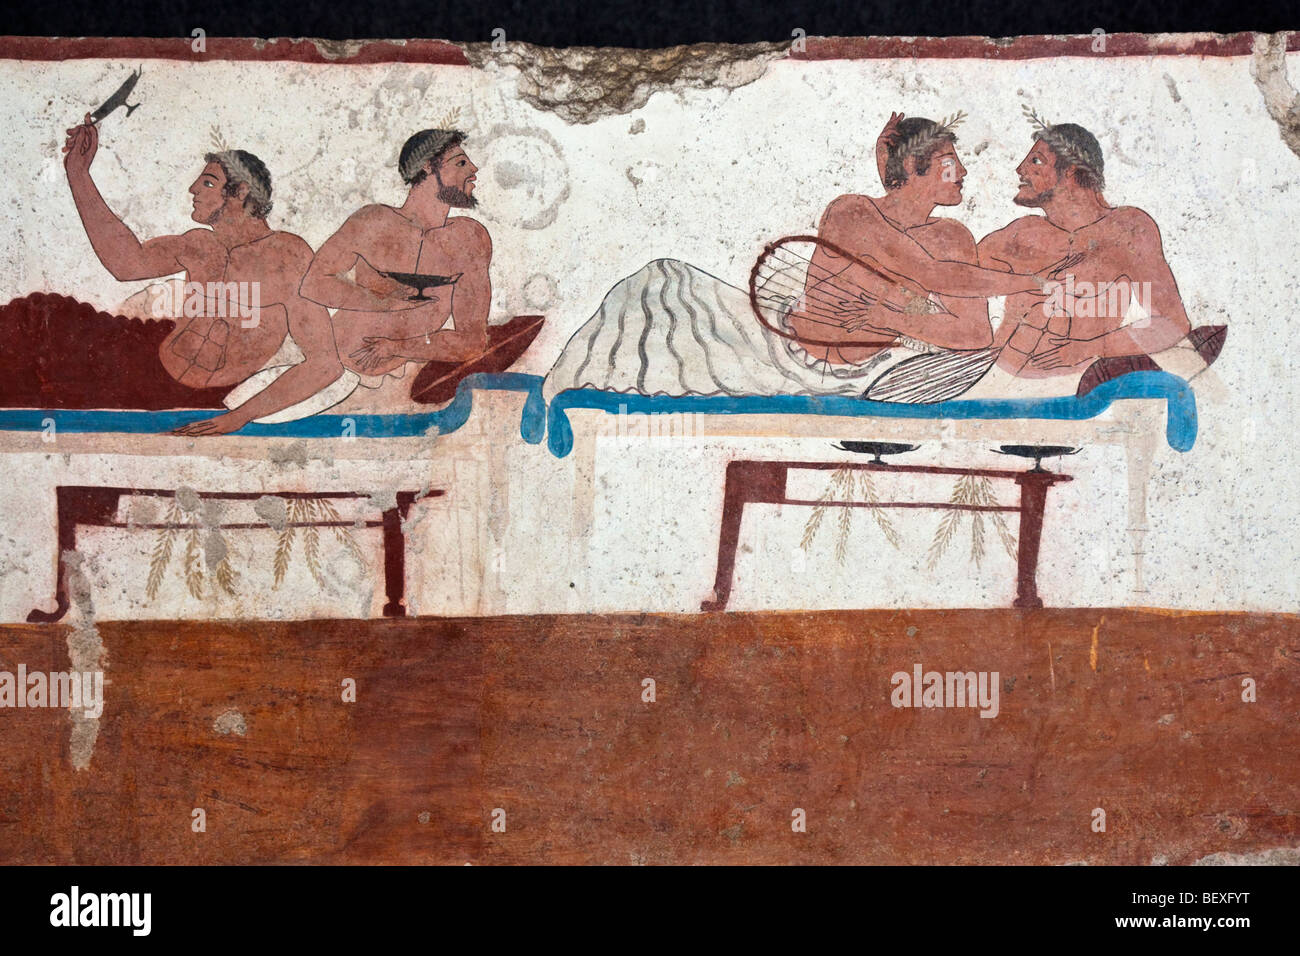 Dettaglio del simposio scena dalla Tomba del Tuffatore a Paestum, Italia. Foto Stock